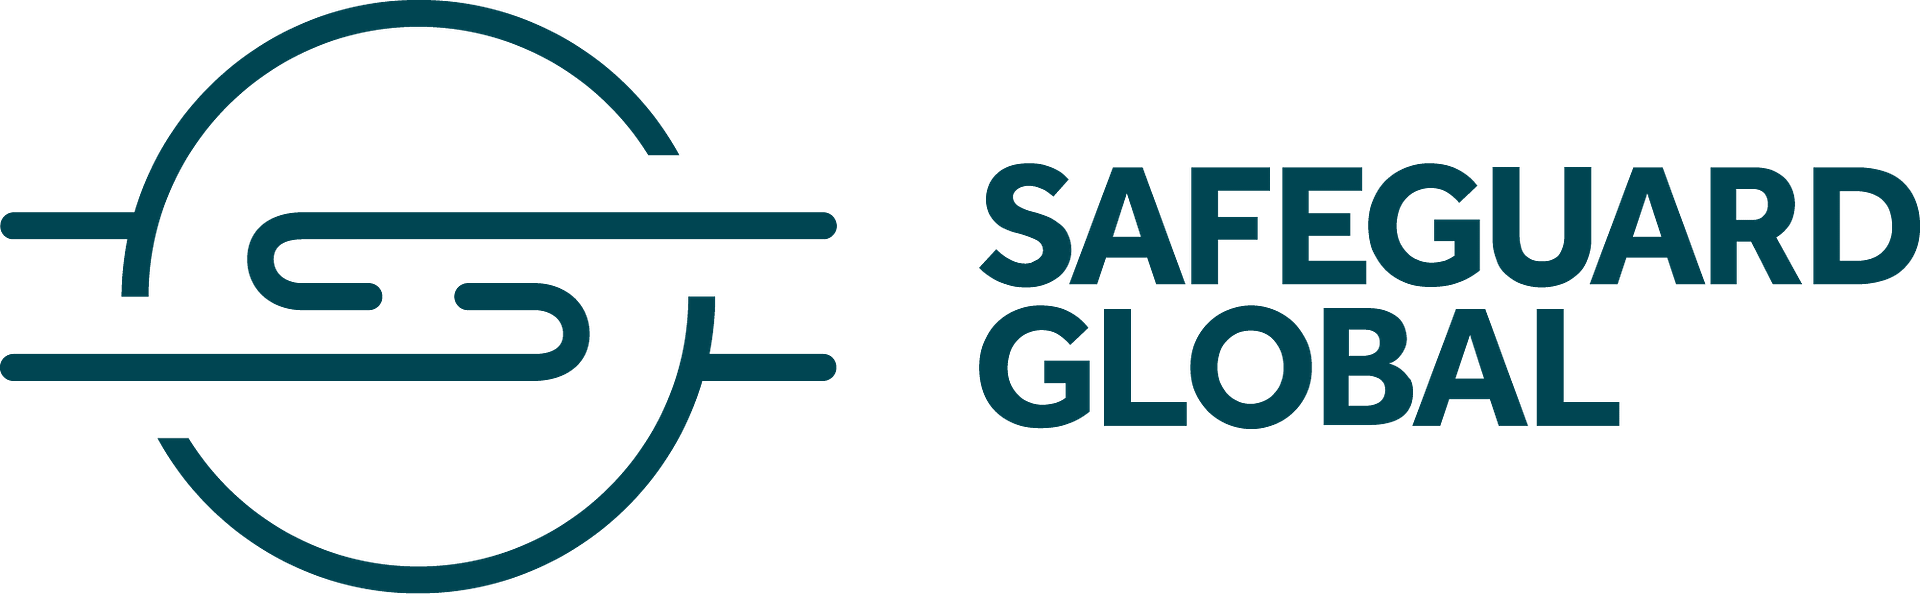 safeguard-global-logo.png